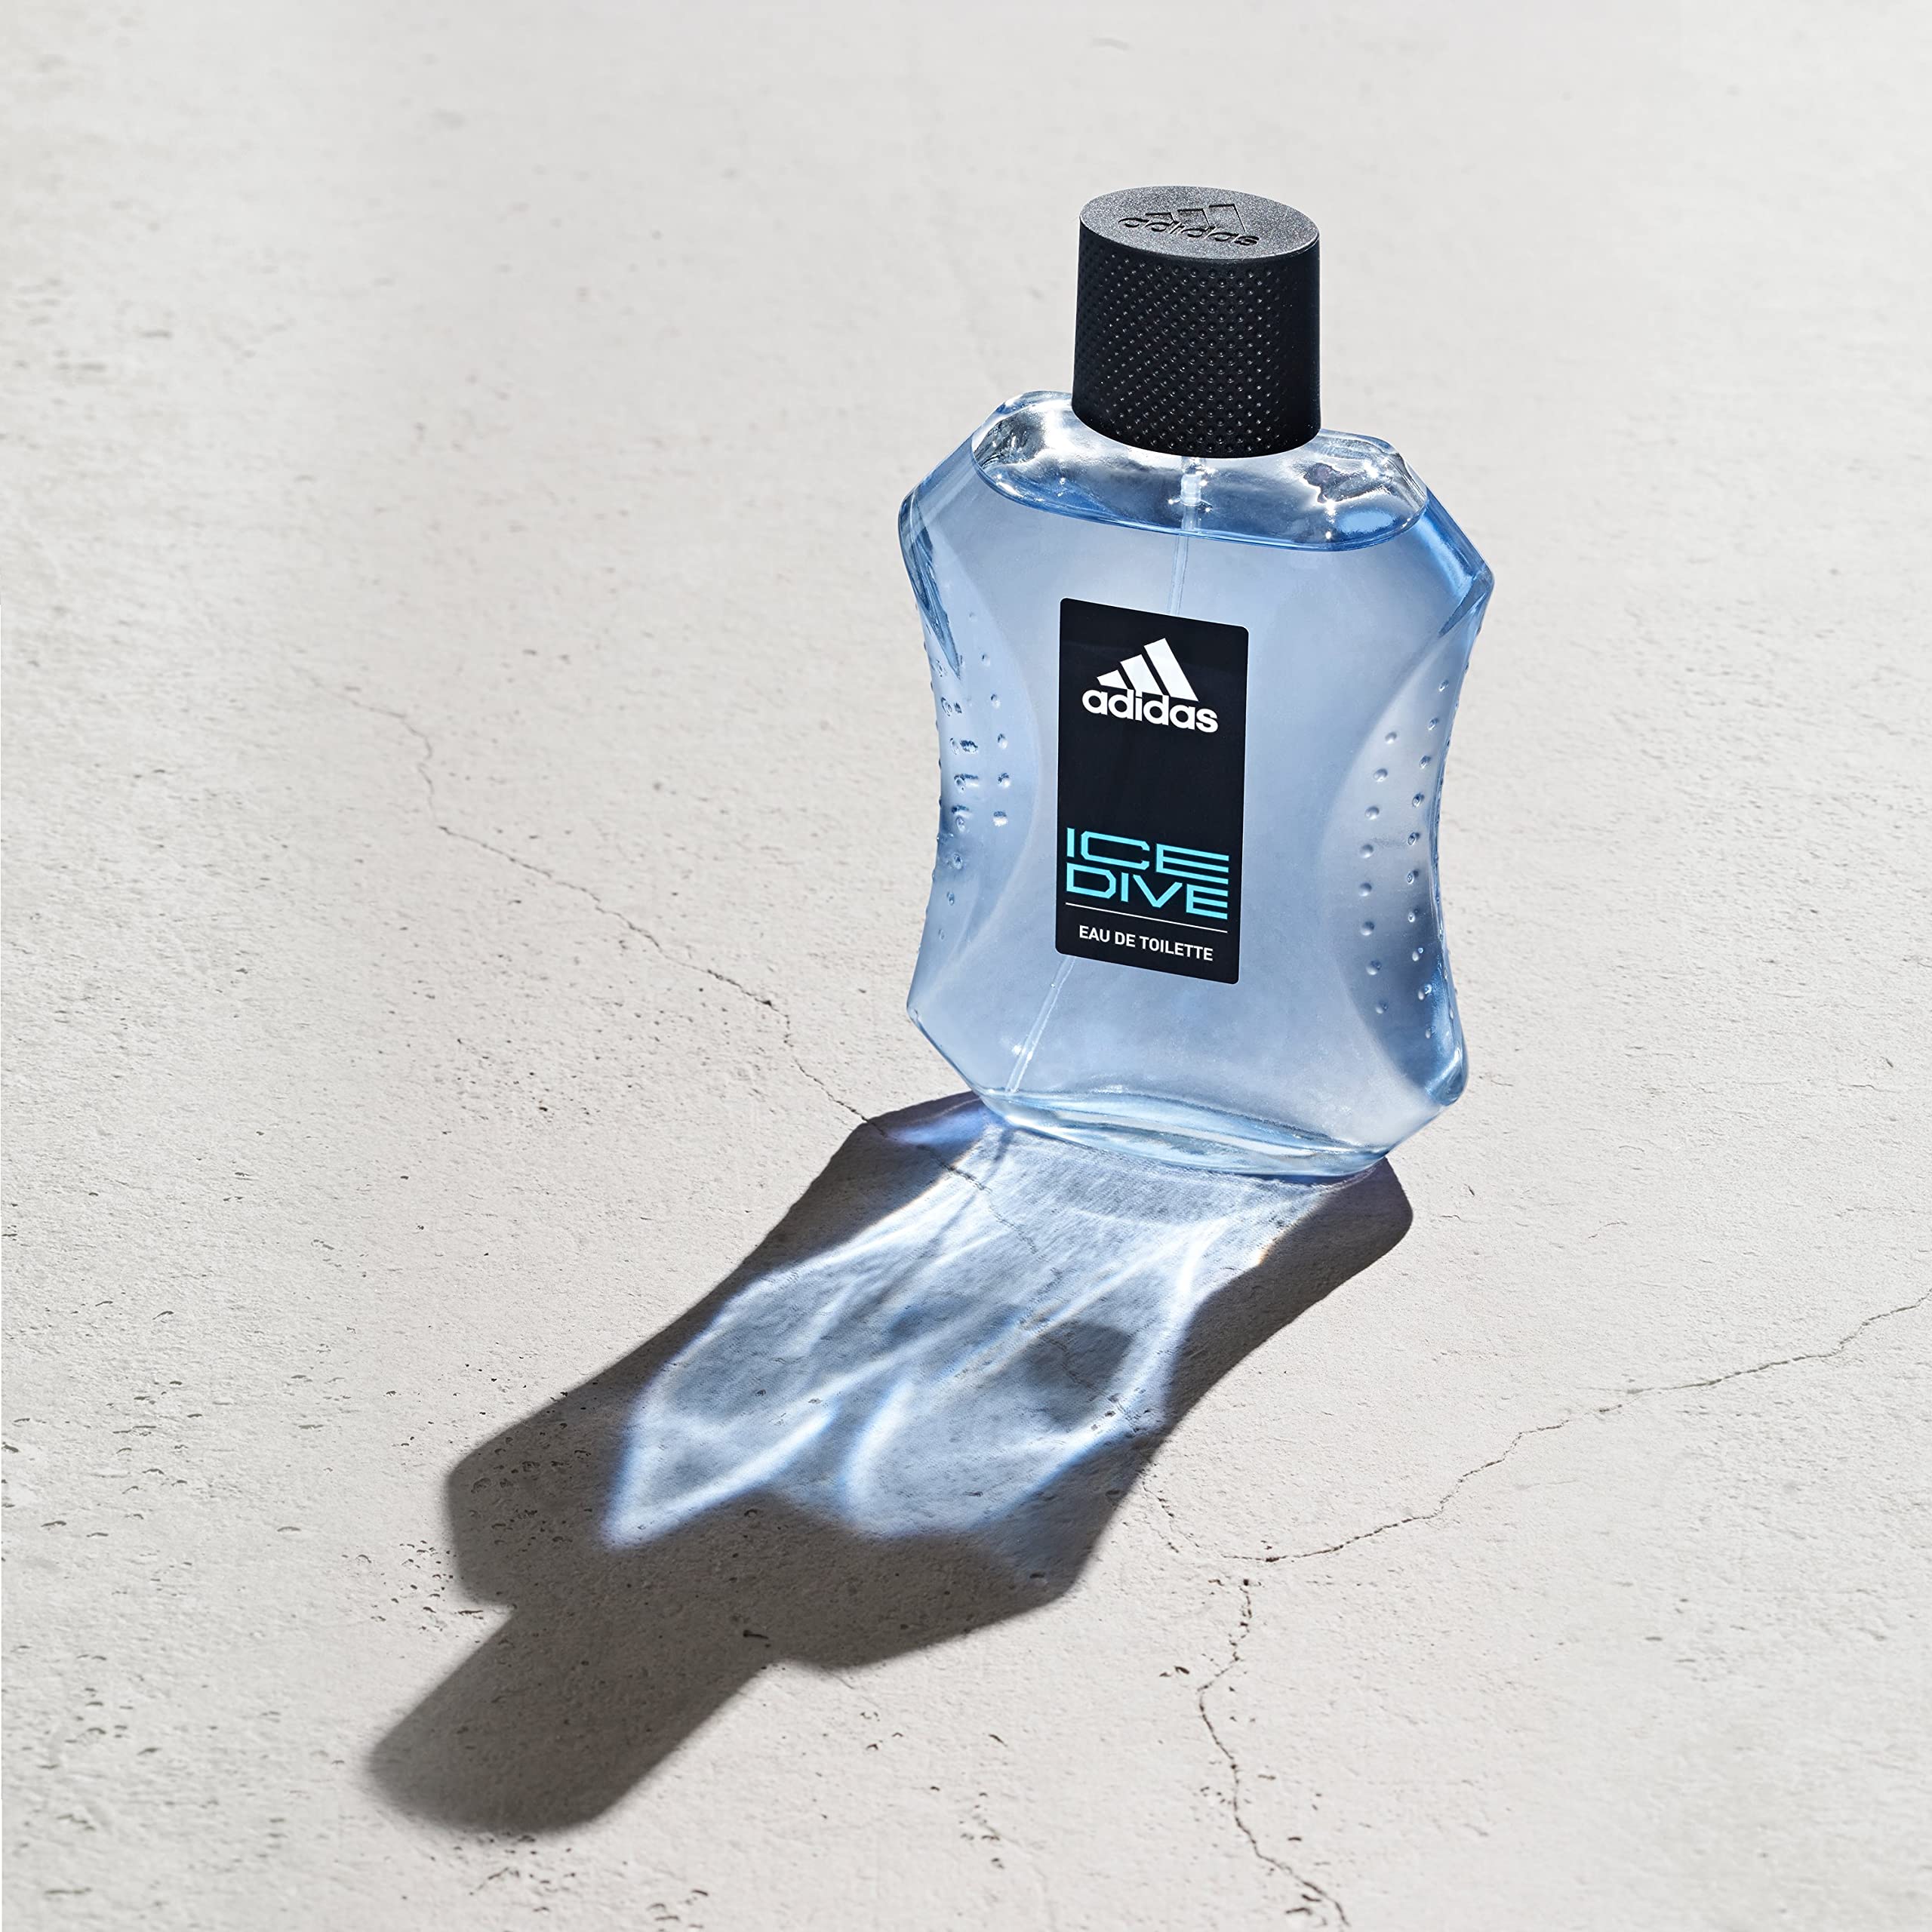 adidas Ice Dive Eau De Toilette Spray for Men, 3.4 fl oz